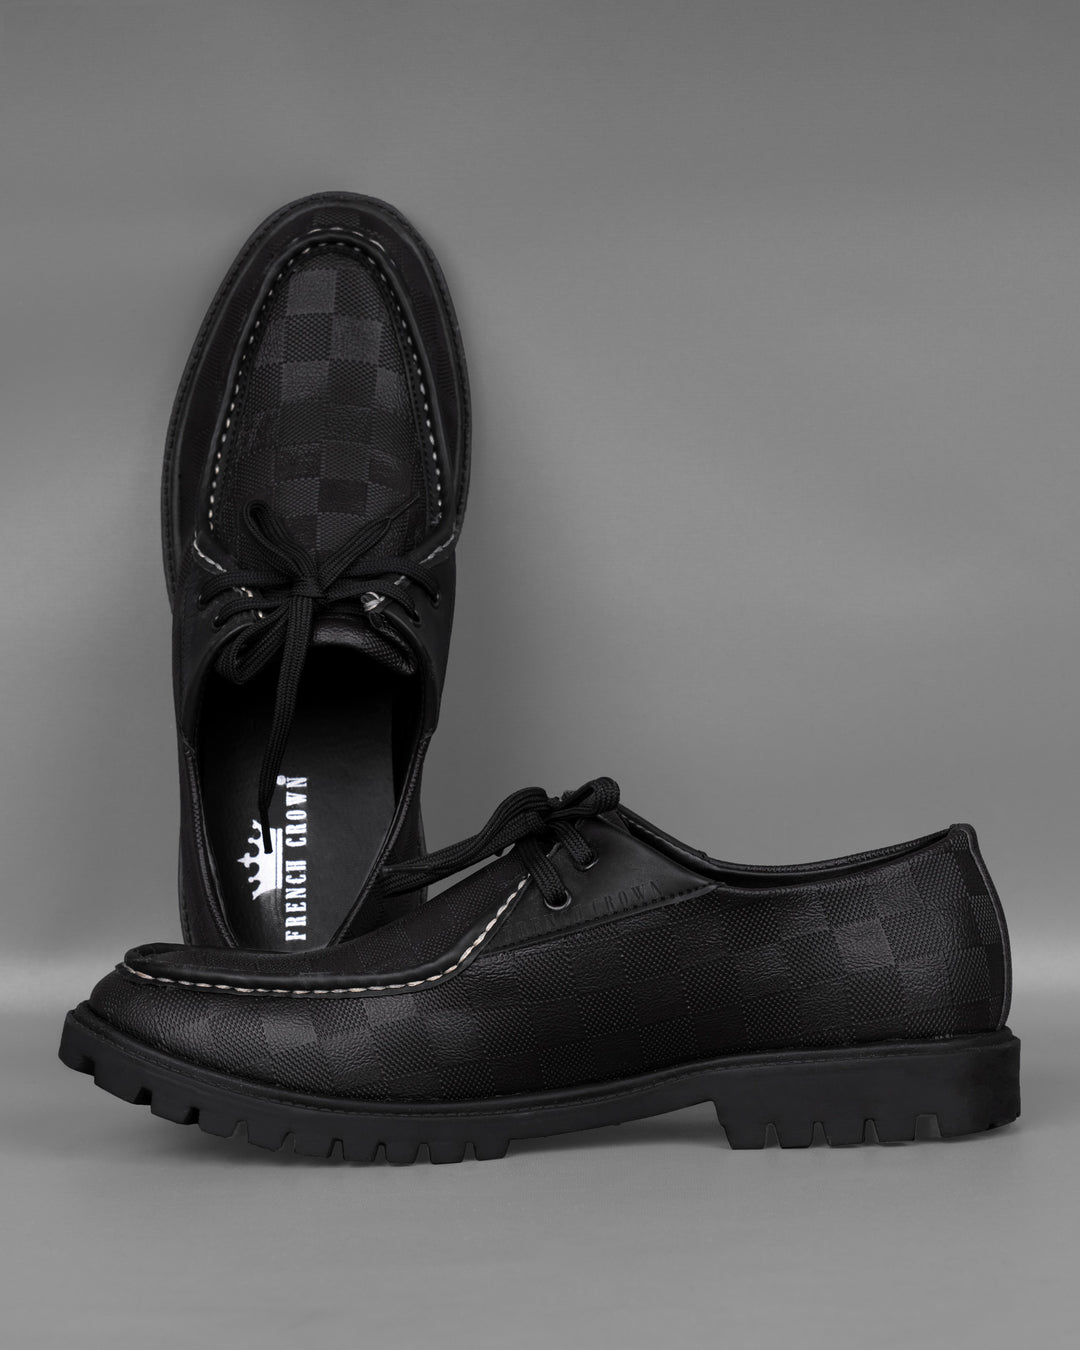 Black Boat Shoes For Men